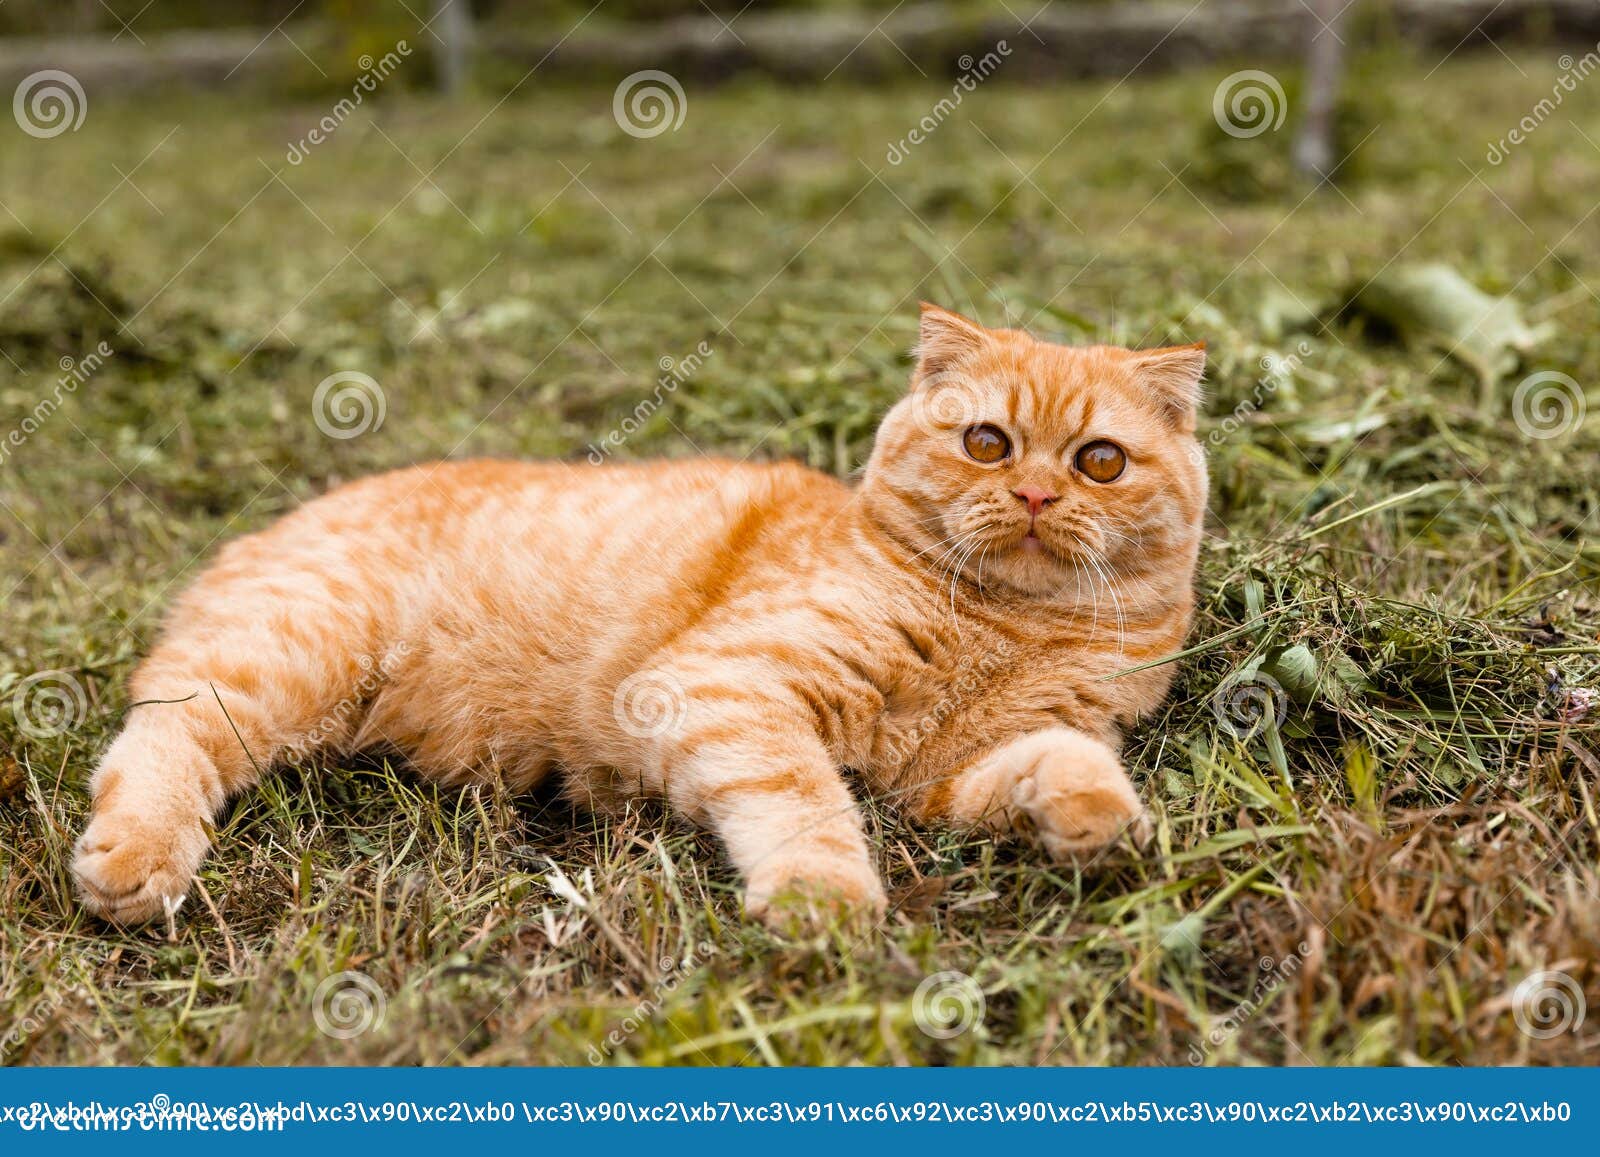 roman assistent aanplakbiljet Portret Van Een Klein Ginger British Kitten Met. De Kat Loopt in De Tuin.  Britse Rode Kat 5 Maanden Oud Stock Foto - Image of kapsel, grappig:  229032892